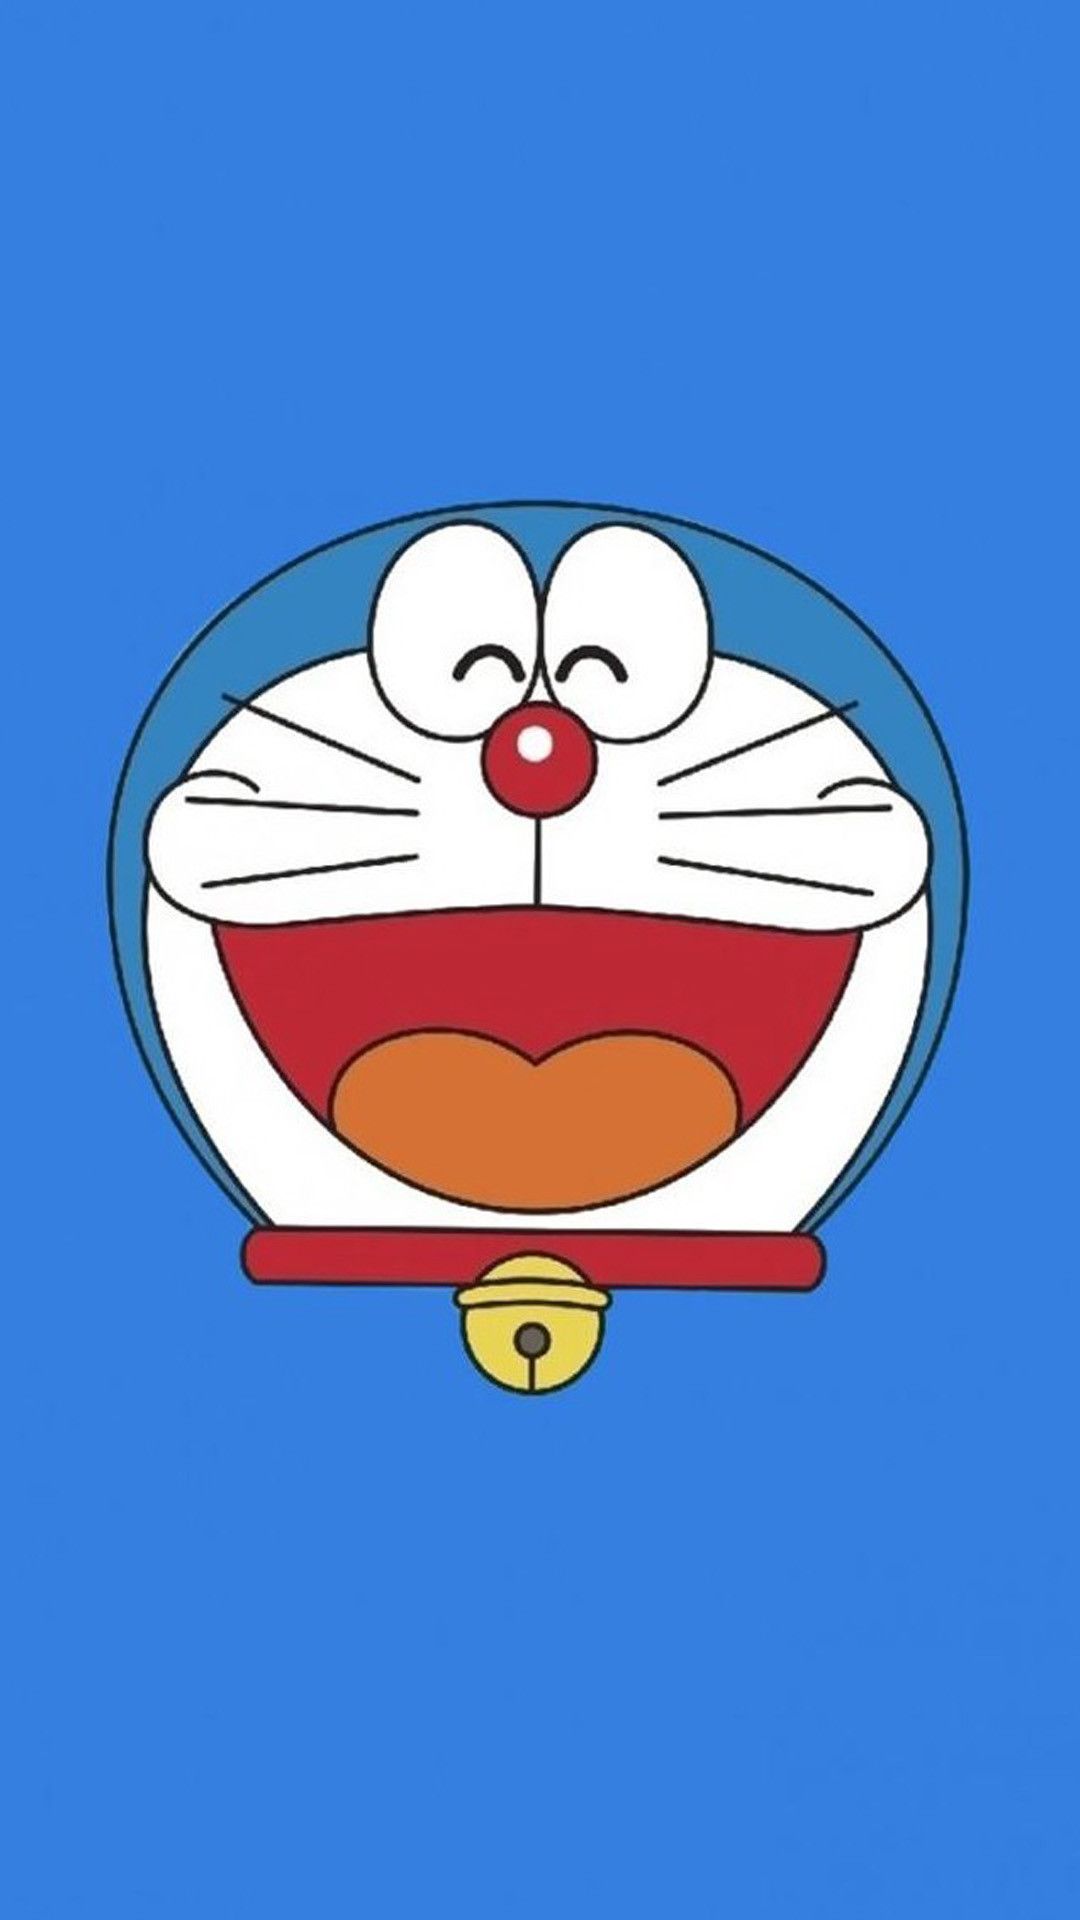 Doremon: Bạn đã sẵn sàng để tìm hiểu về Doremon - chú mèo máy đáng yêu và nổi tiếng nhất của Nhật Bản? Những hình ảnh tuyệt đẹp về chú mèo máy này sẽ truyền tải cho bạn cảm giác thần kỳ của cuốn truyện tranh và phim hoạt hình này. Hãy cùng đến với thế giới phong phú của Doremon và trẻ lại tuổi thơ của bạn!